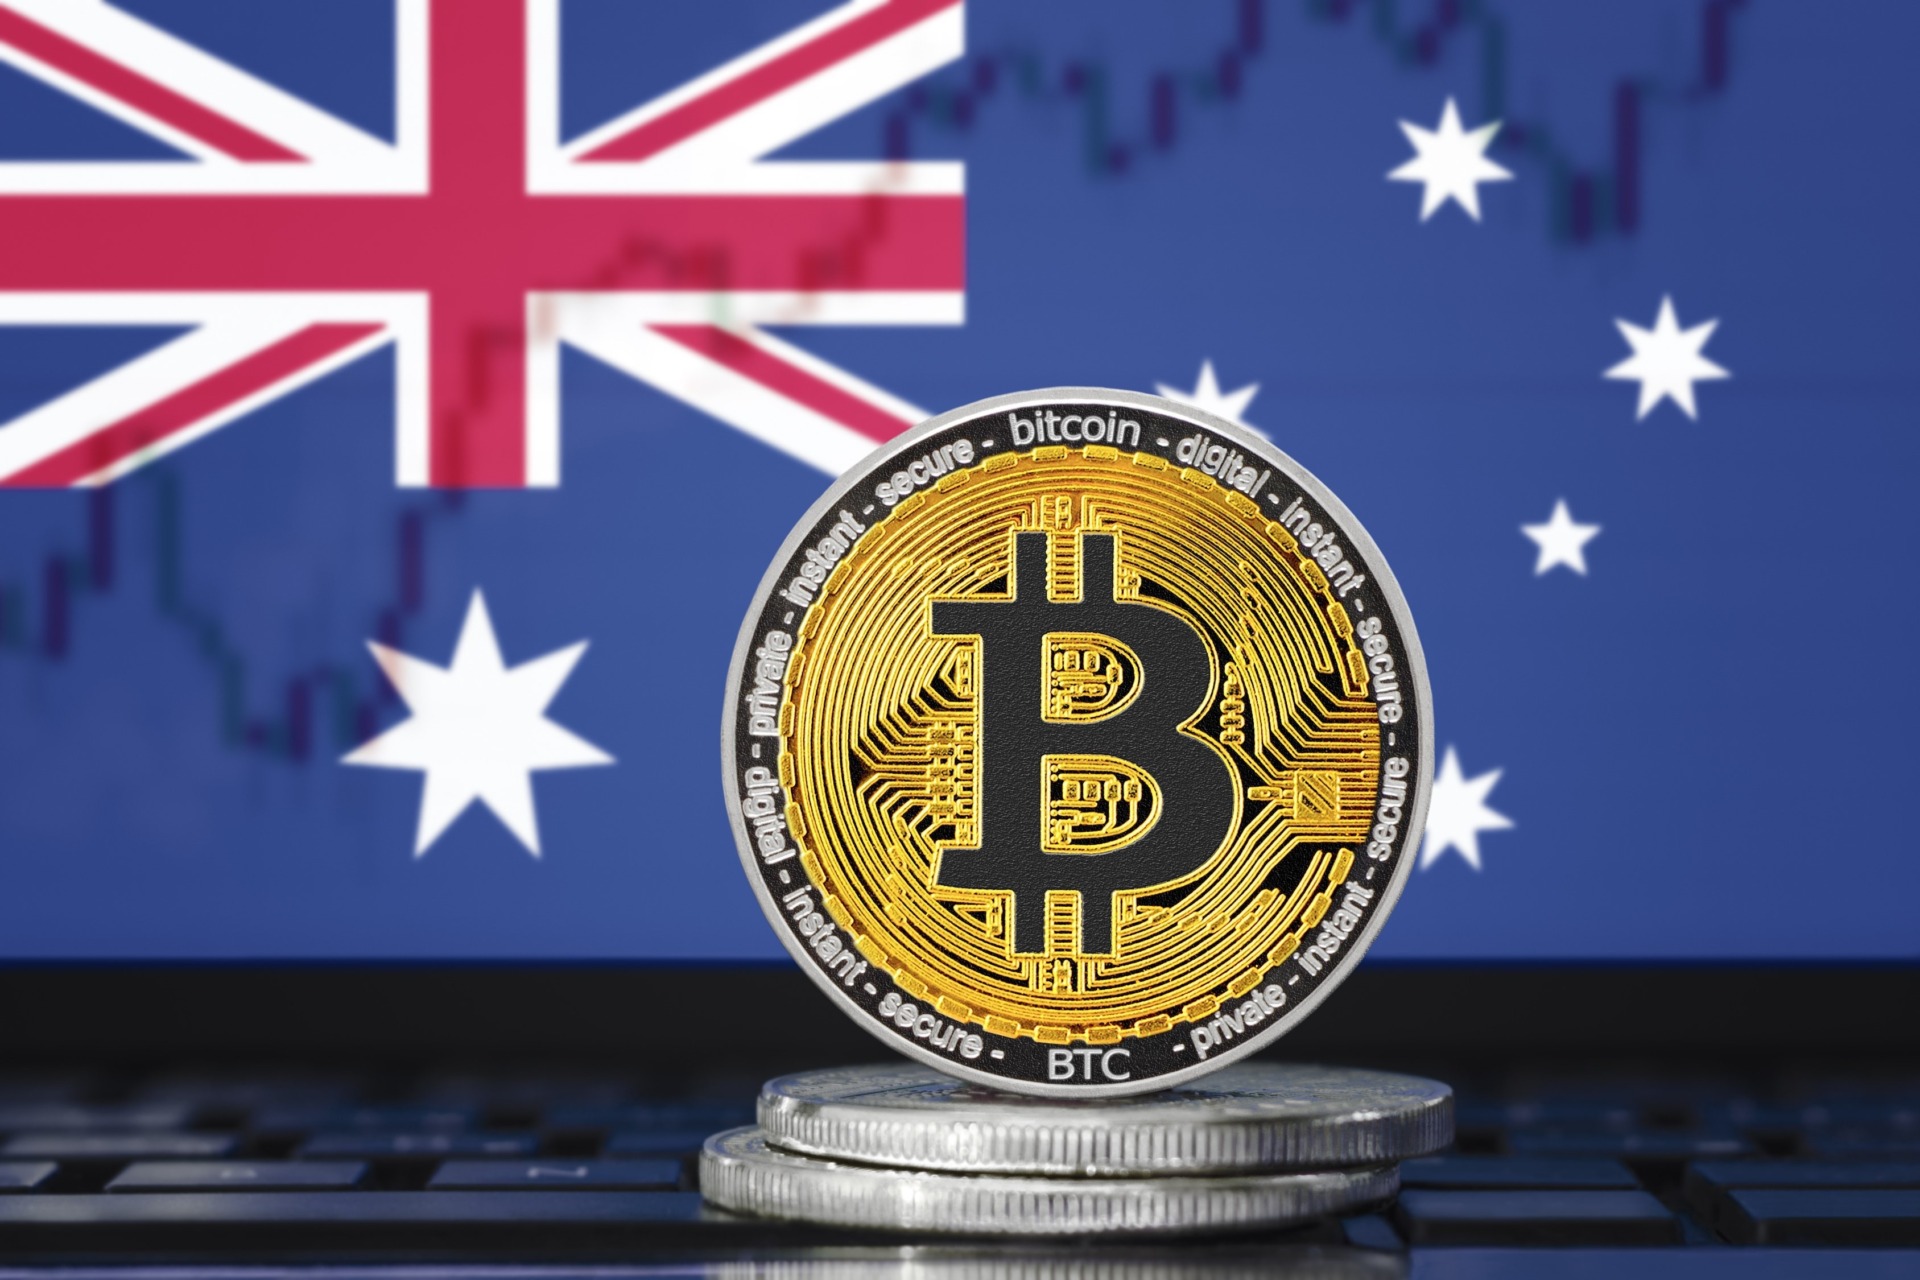 Bajo el radar: el lanzamiento del primer fondo cotizado en bolsa de Bitcoin en Australia precede a Estados Unidos

En una noticia que está pasando desapercibida, Australia se ha adelantado a Estados Unidos en el lanzamiento de un fondo cotizado en bolsa (ETF, por sus siglas en inglés) de Bitcoin. Este nuevo desarrollo en el mundo de las criptomonedas ha generado gran expectativa y podría tener un impacto significativo en el mercado financiero.

El ETF de Bitcoin en Australia ha sido lanzado por la empresa de inversión BetaShares. Esto permitirá a los inversores australianos tener exposición directa a Bitcoin a través de su cuenta de corretaje customary, lo que brinda una mayor accesibilidad y facilidad para invertir en esta criptomoneda.

Este movimiento se construct en un momento en el que Estados Unidos todavía no ha aprobado un ETF de Bitcoin. Aunque ha habido múltiples solicitudes y propuestas para lanzar un ETF de Bitcoin en el país, hasta ahora la Comisión de Valores y Bolsa de Estados Unidos (SEC, por sus siglas en inglés) ha rechazado todas las propuestas.

El lanzamiento del ETF de Bitcoin en Australia podría ser un paso importante que impulse a Estados Unidos a tomar medidas más rápidas para aprobar un producto identical. La creciente popularidad de las criptomonedas y el interés creciente de los inversores han presionado a las autoridades regulatorias para que consideren estas nuevas formas de inversión.

El mercado de las criptomonedas ha demostrado ser muy volátil y con riesgos, pero también ha generado grandes oportunidades de ganancias. Los inversores están buscando aprovechar estas oportunidades y diversificar sus carteras con criptomonedas como Bitcoin.

A medida que los países continúan explorando y adoptando las criptomonedas, es importante que las regulaciones y marcos legales estén en su lugar para proteger a los inversores y promover un crecimiento sostenible en este mercado emergente. Hasta que Estados Unidos apruebe un ETF de Bitcoin, es posible que los inversores estadounidenses busquen invertir a través de plataformas extranjeras como la de Australia.

En resumen, el lanzamiento del primer ETF de Bitcoin en Australia ha tomado por sorpresa a muchos, ya que precede al lanzamiento de un producto identical en Estados Unidos. Este avance en la accesibilidad de Bitcoin para los inversores australianos podría influir en las decisiones de los reguladores estadounidenses y acelerar el proceso de aprobación de un ETF de Bitcoin en el país